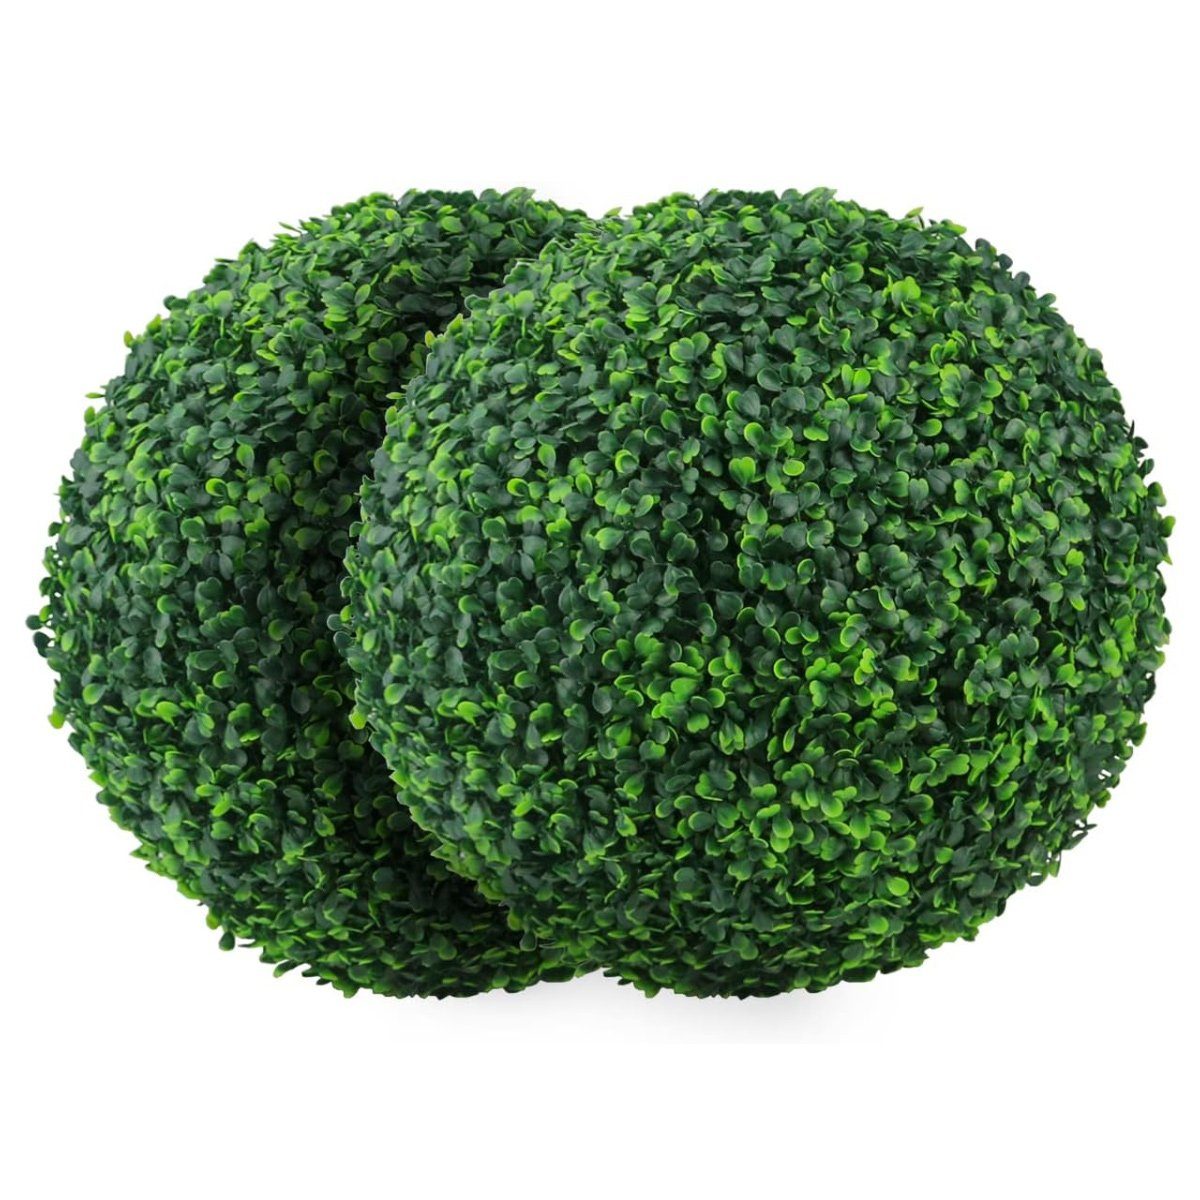 Kunstpflanze Künstliche Pflanze Formschnittkugel Kunstbuchsbaum dekorative Kugeln, Jormftte grün1